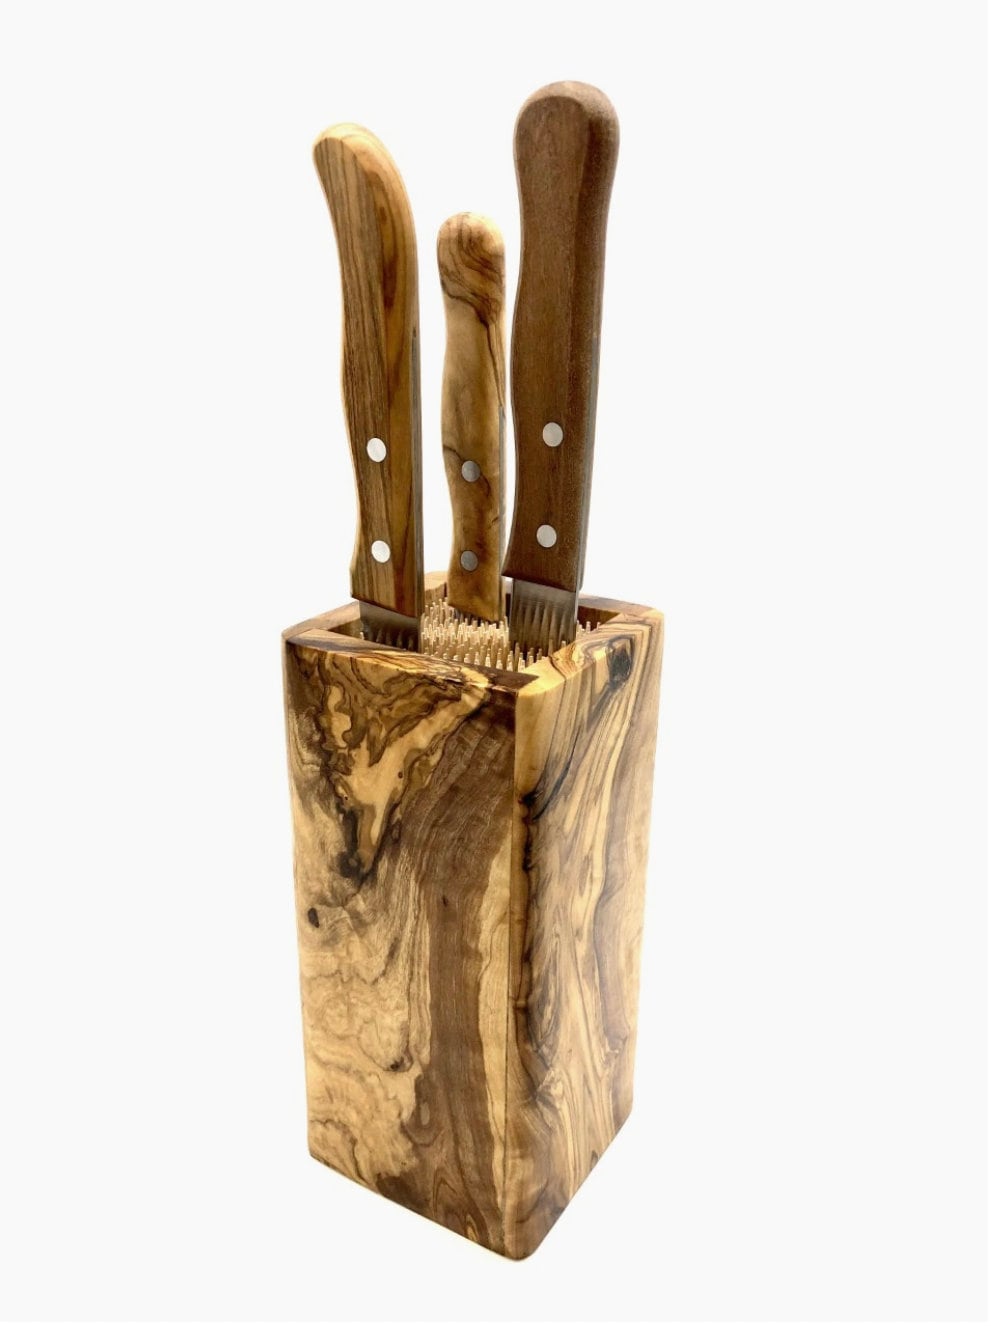 Wüsthof 2099605002 wooden knife block for 6 knives